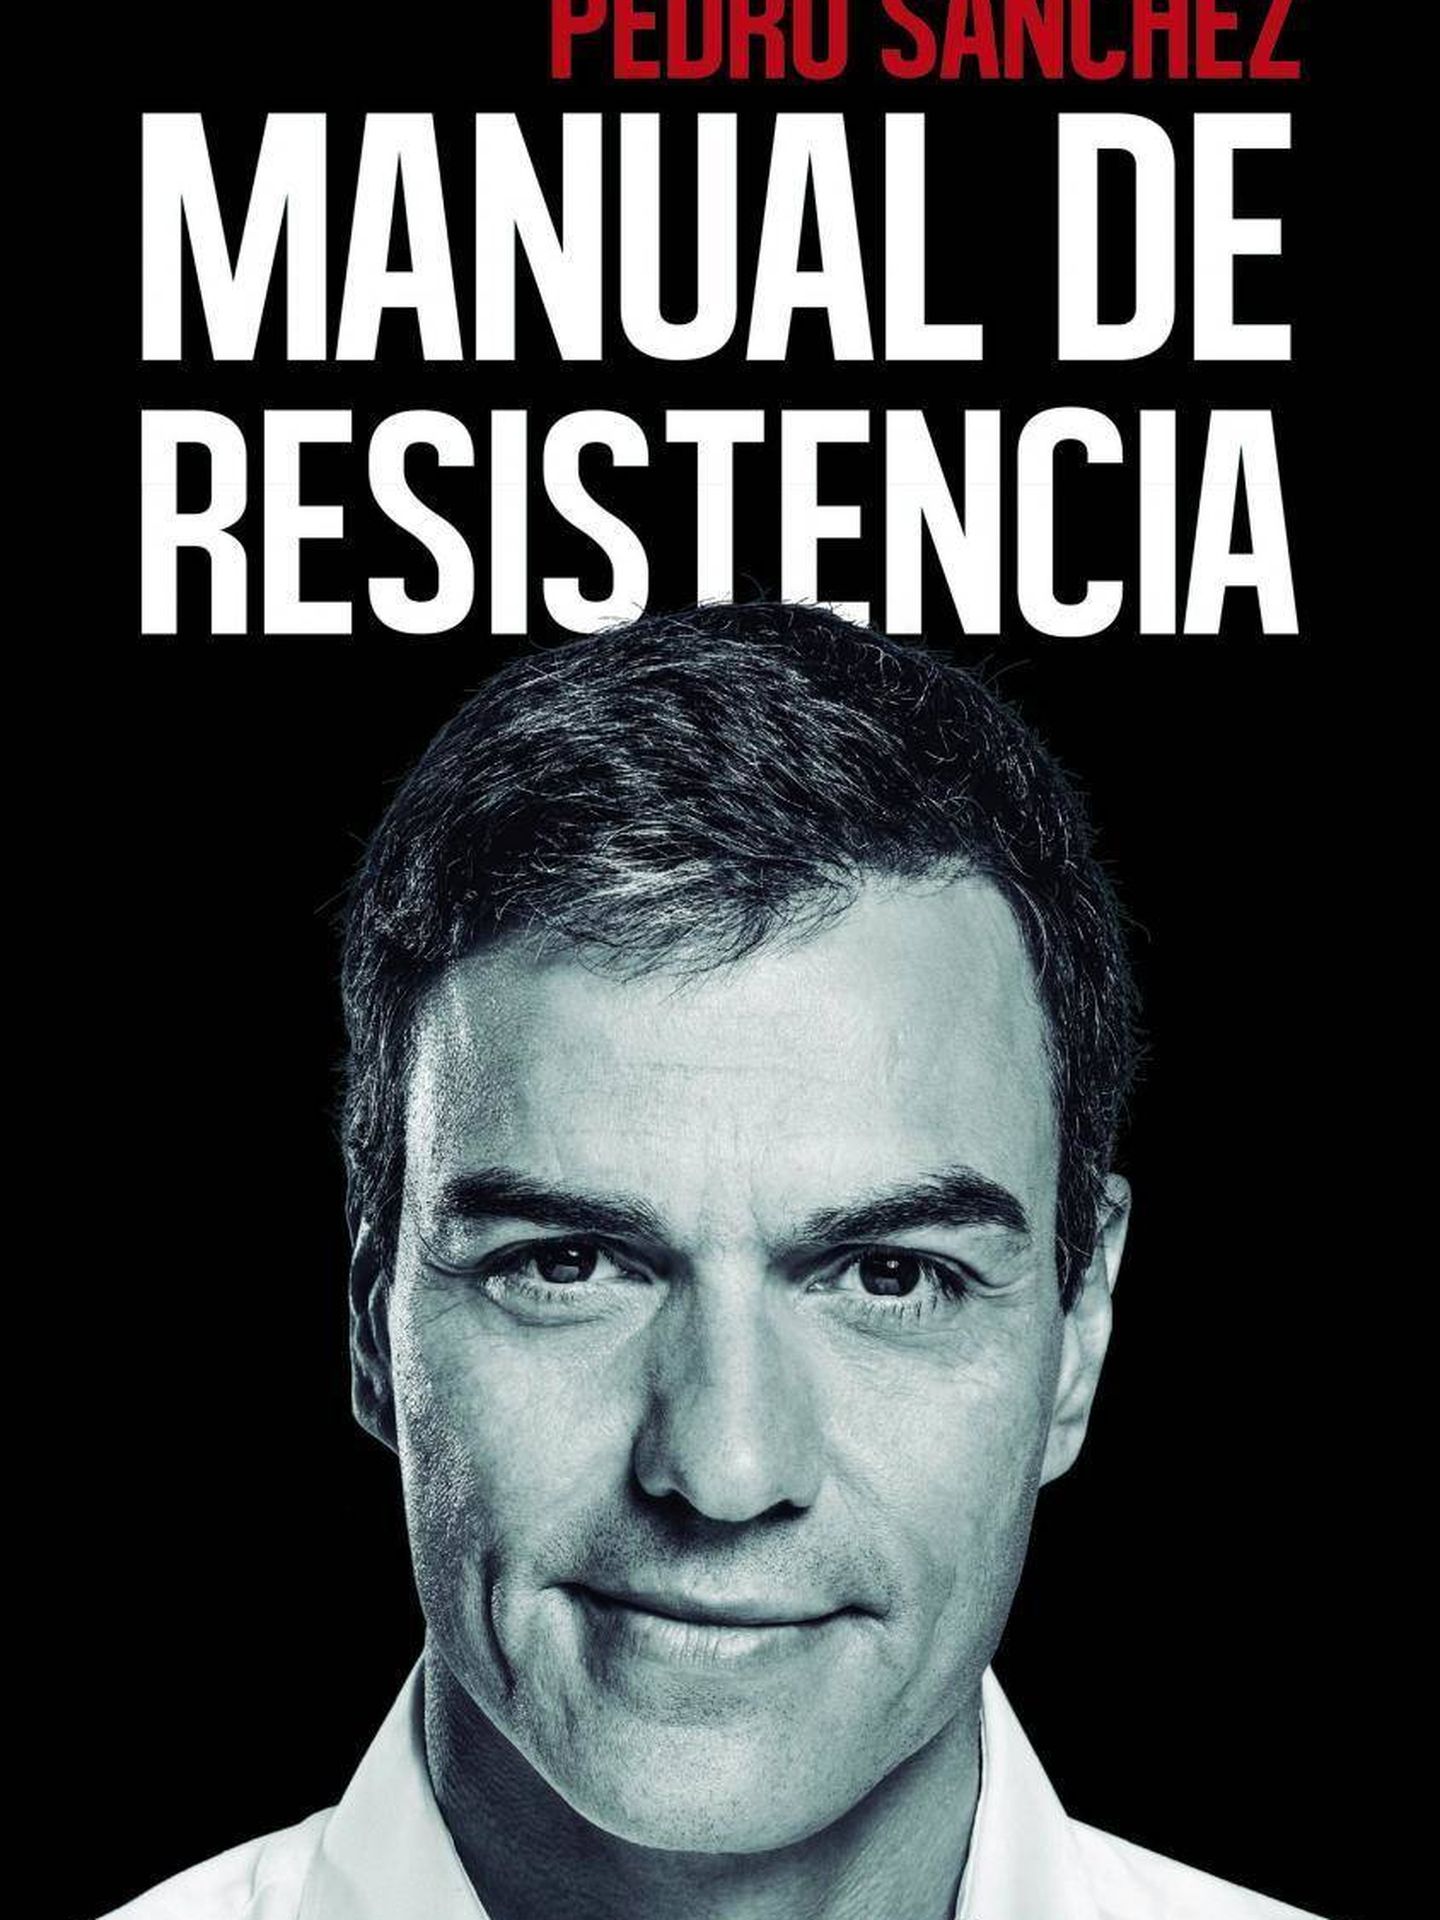 'Manual de resistencia', el libro firmado por Pedro Sánchez y editado por Península